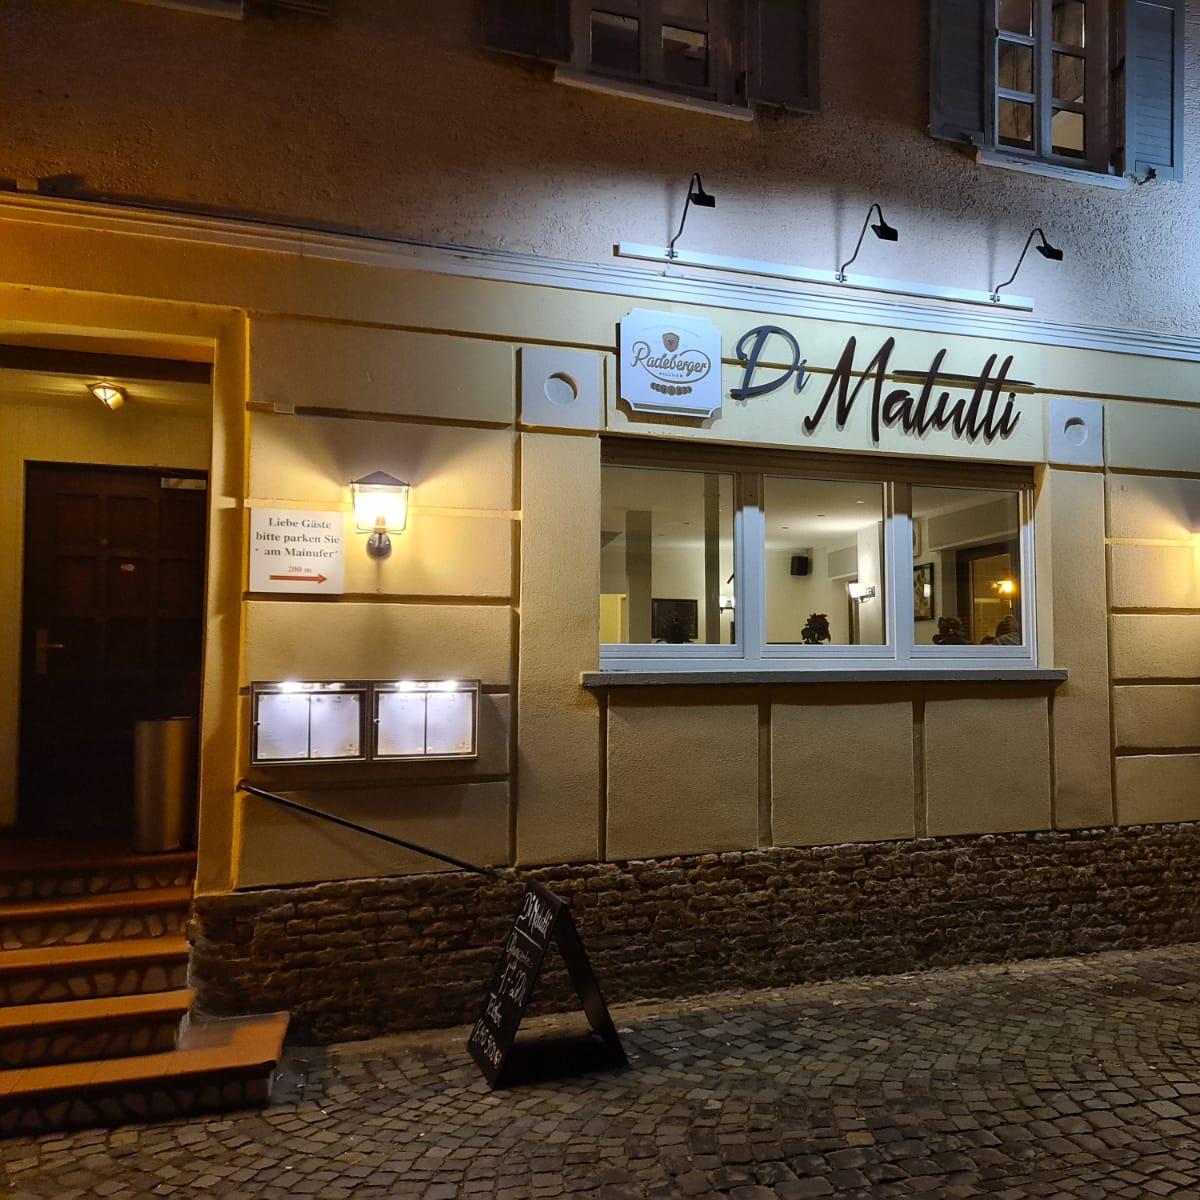 Restaurant "Di Matutti - Pizzeria" in Frankfurt am Main